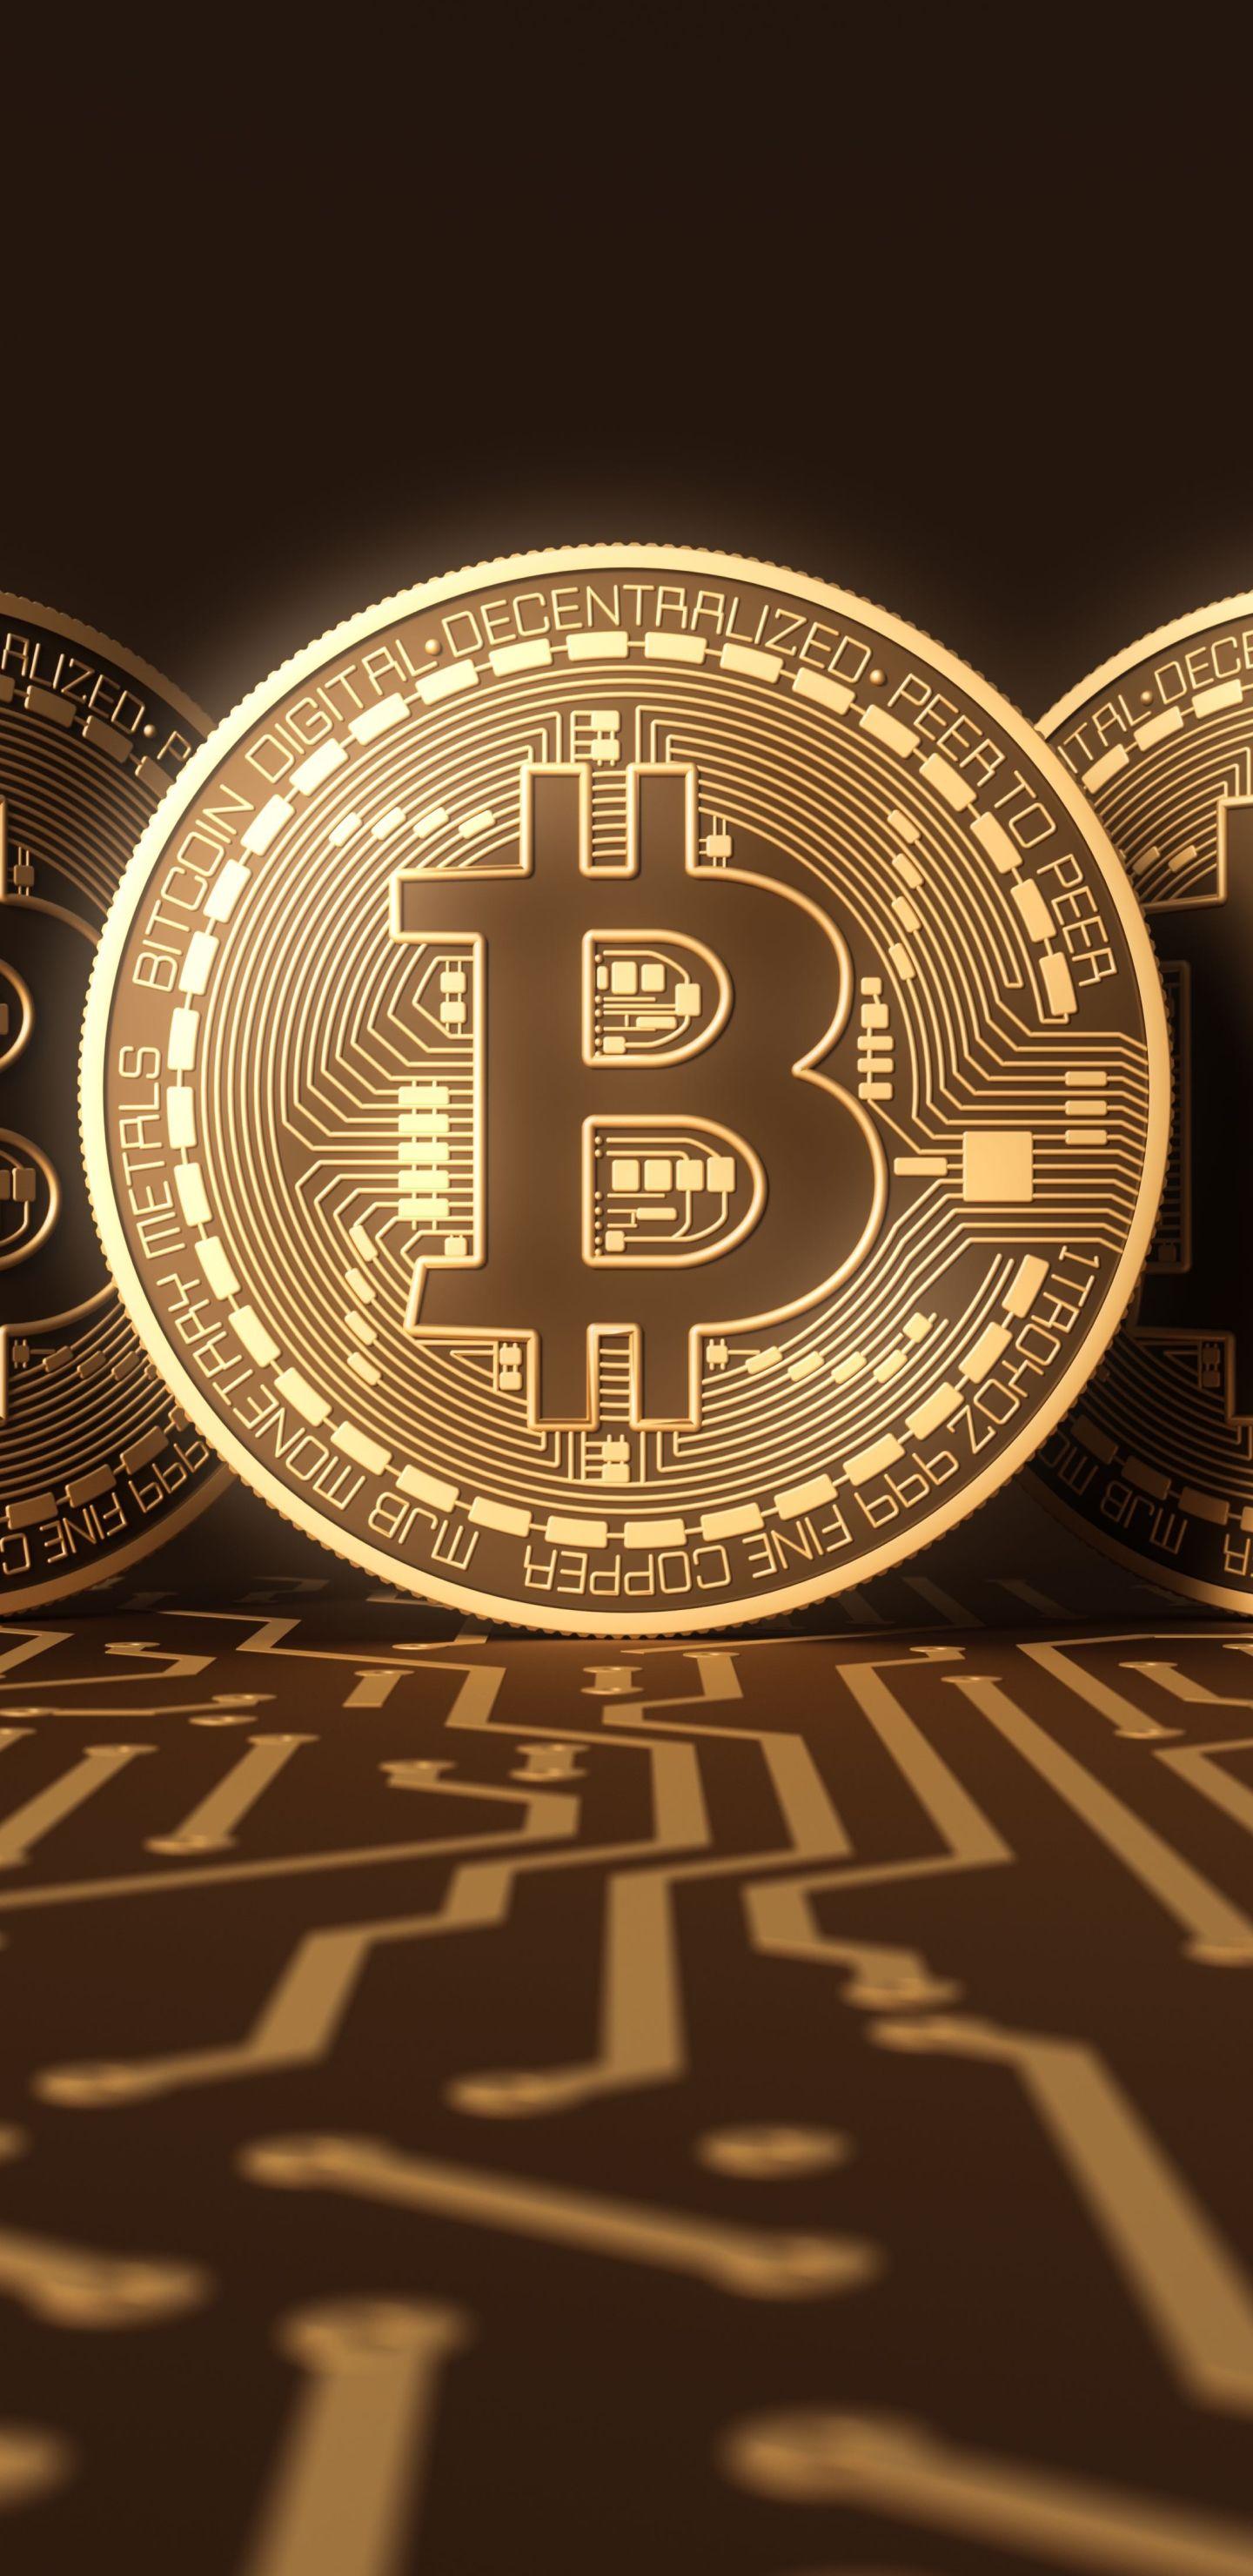 Múlik a kriptodivat, rázós időszak elé néz a bitcoin | Magyar Nemzet